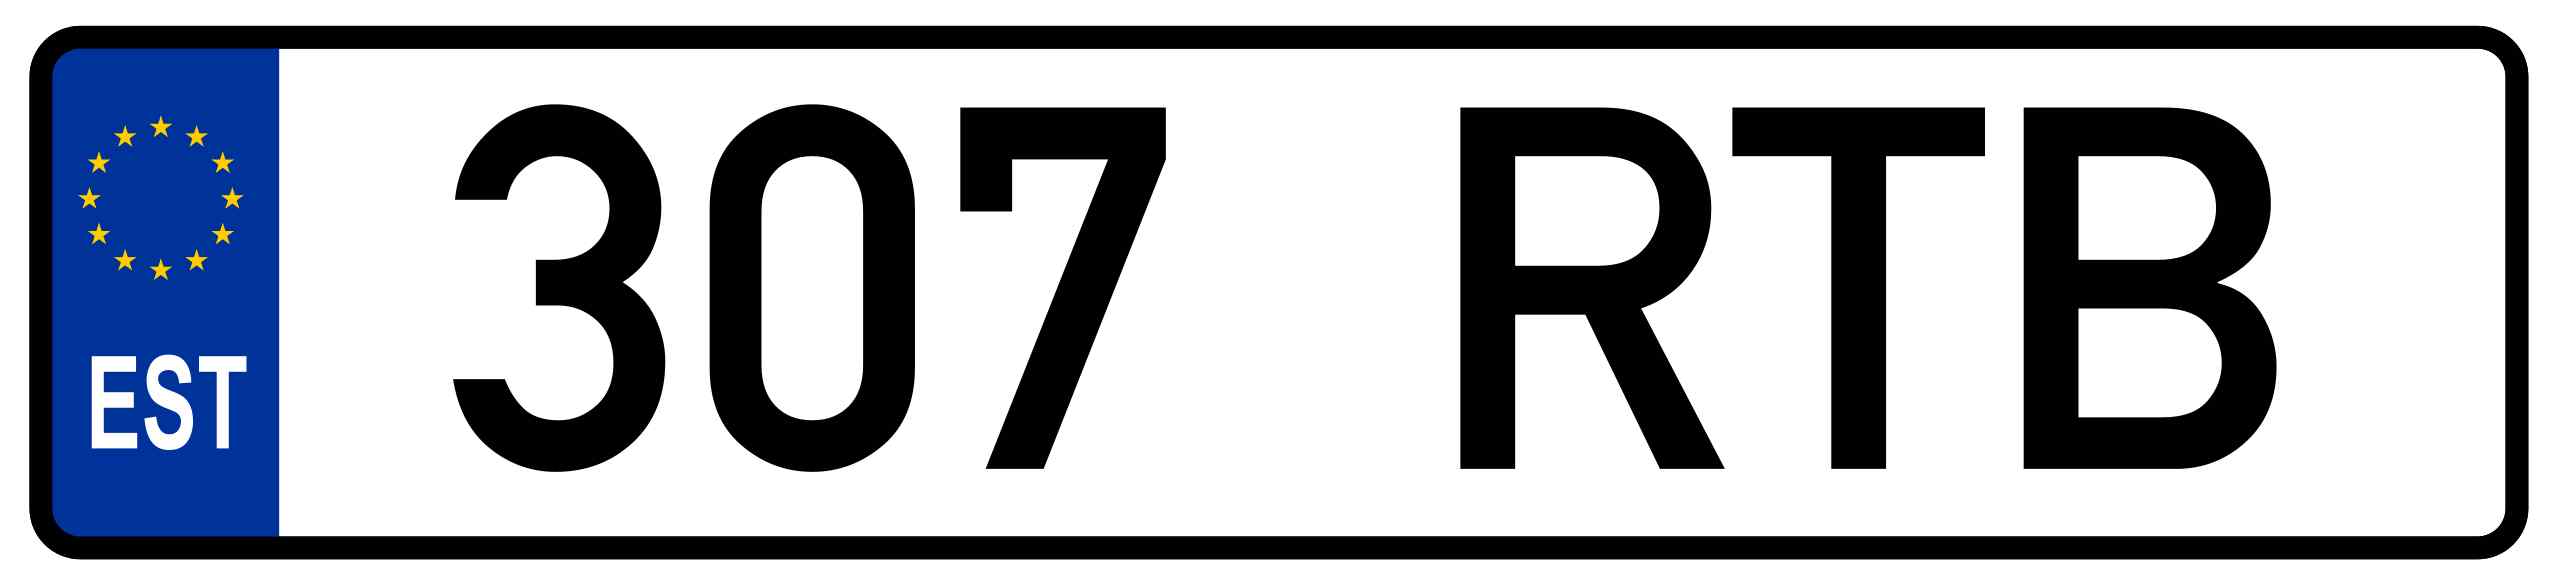 Estonia License Plate 1